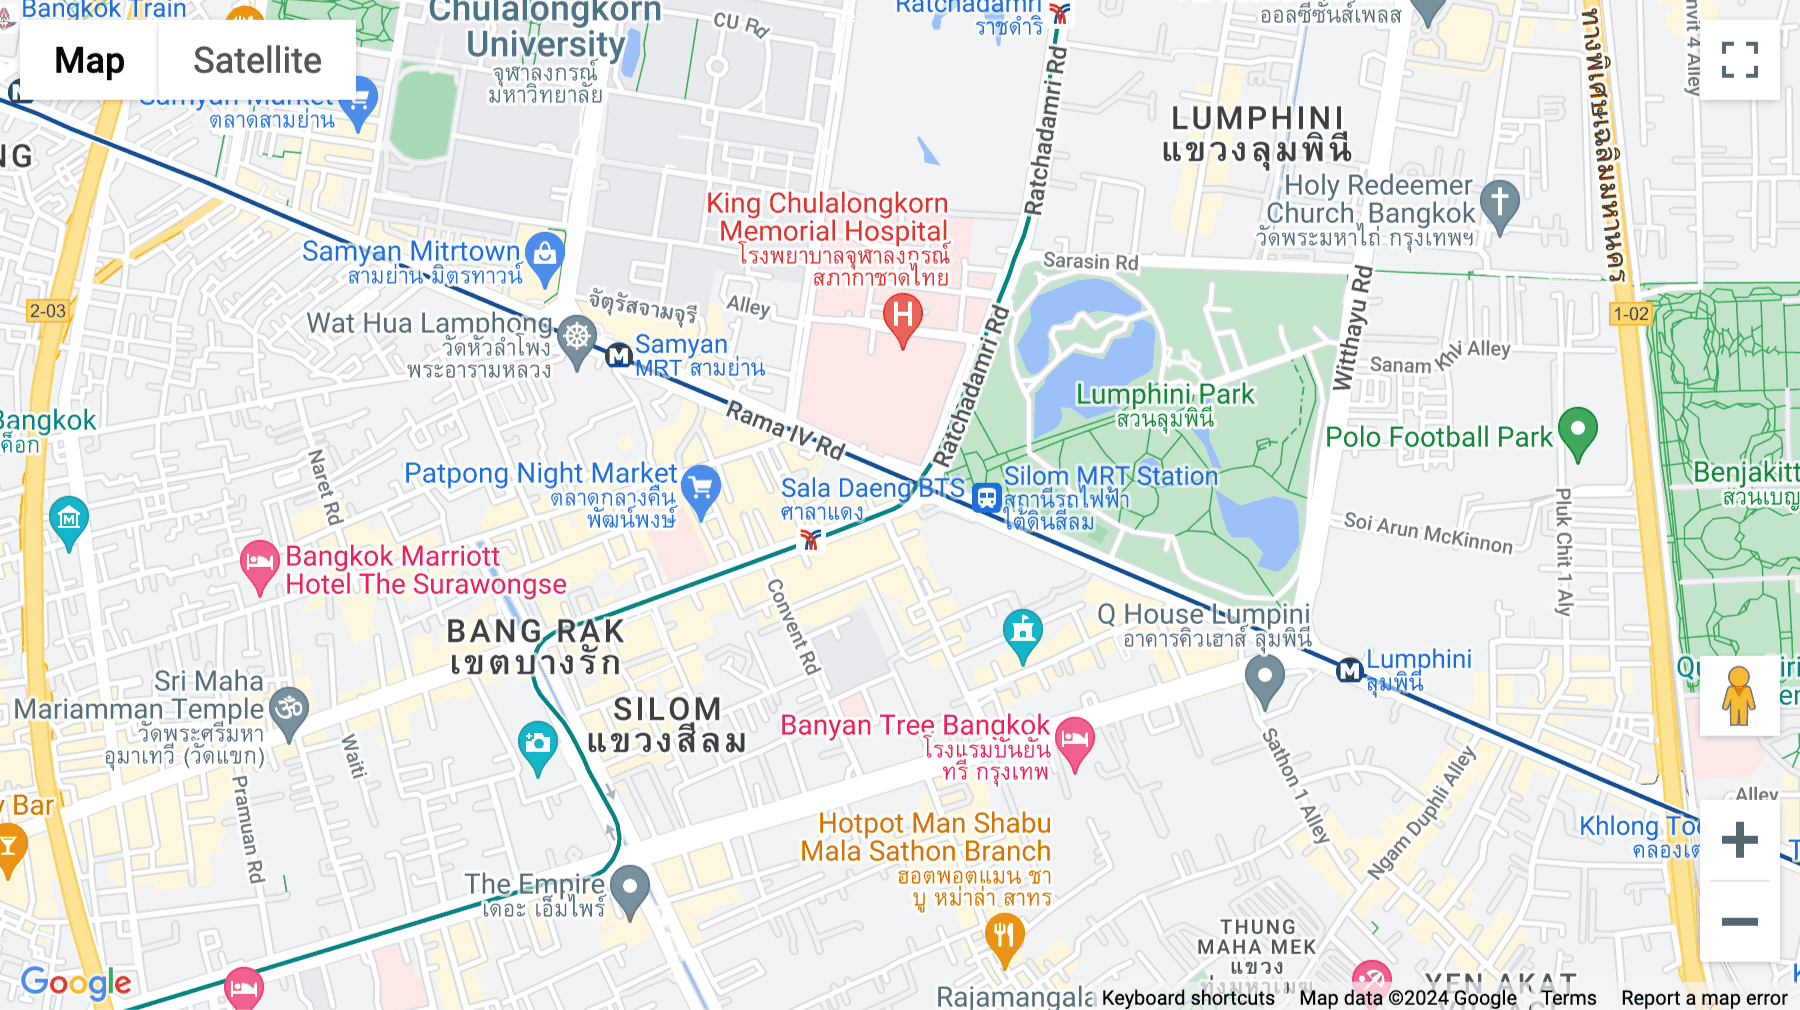 Click for interative map of No. 2 Silom Road, Silom Edge, 10th-14th Floor, Suriyawong, Bangkok